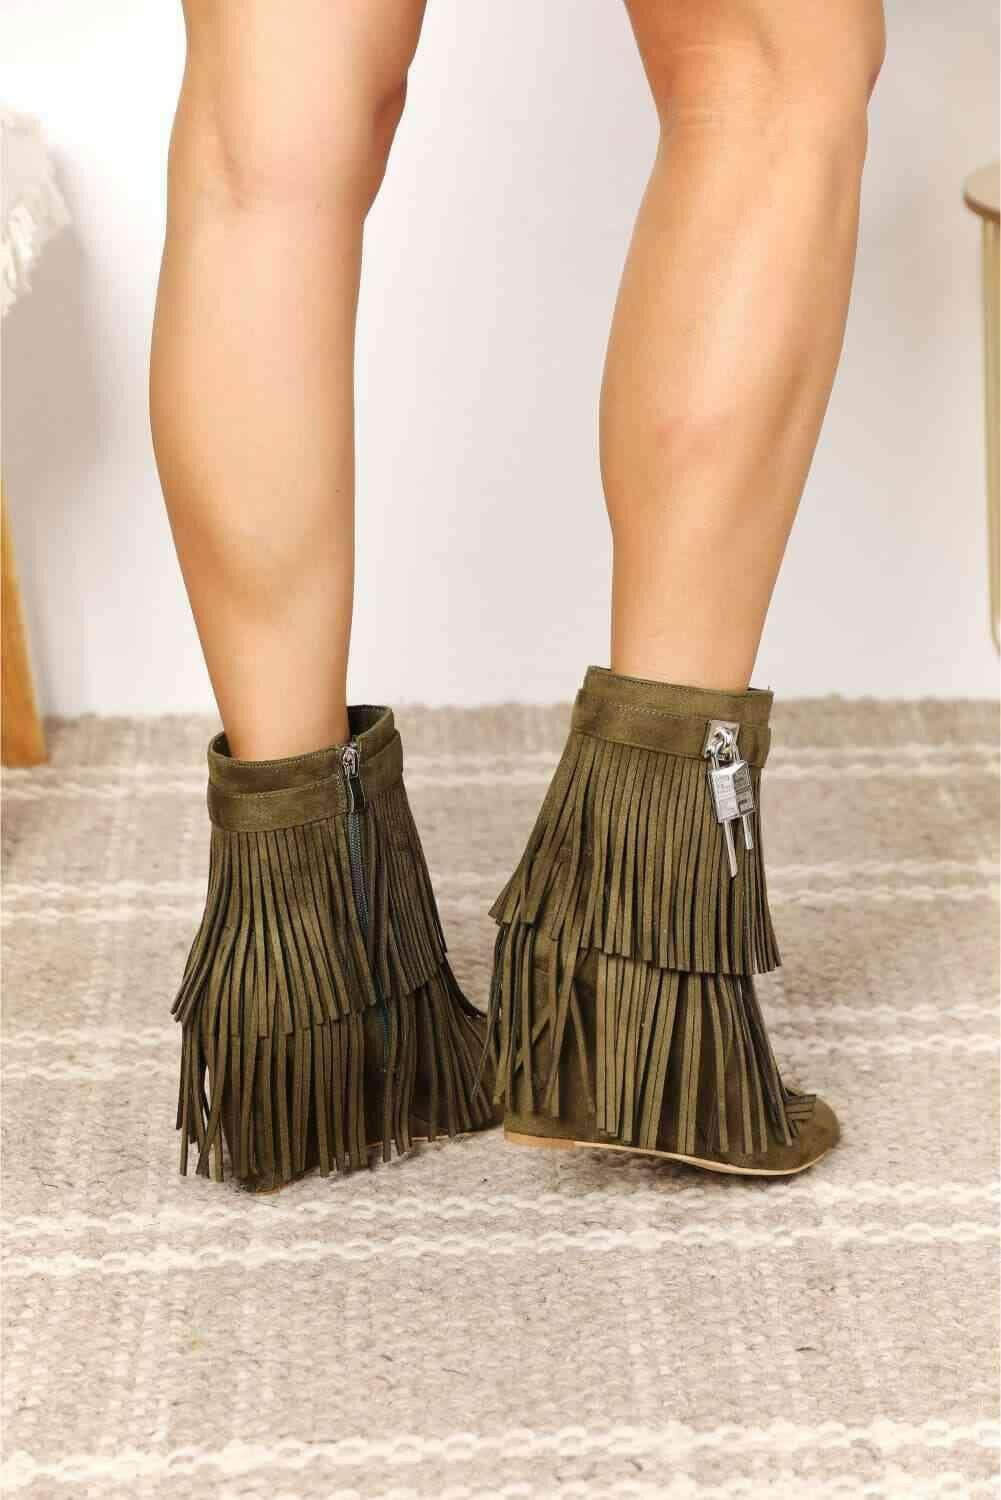 Modern Tassel Wedge Heel Ankle Booties for Women